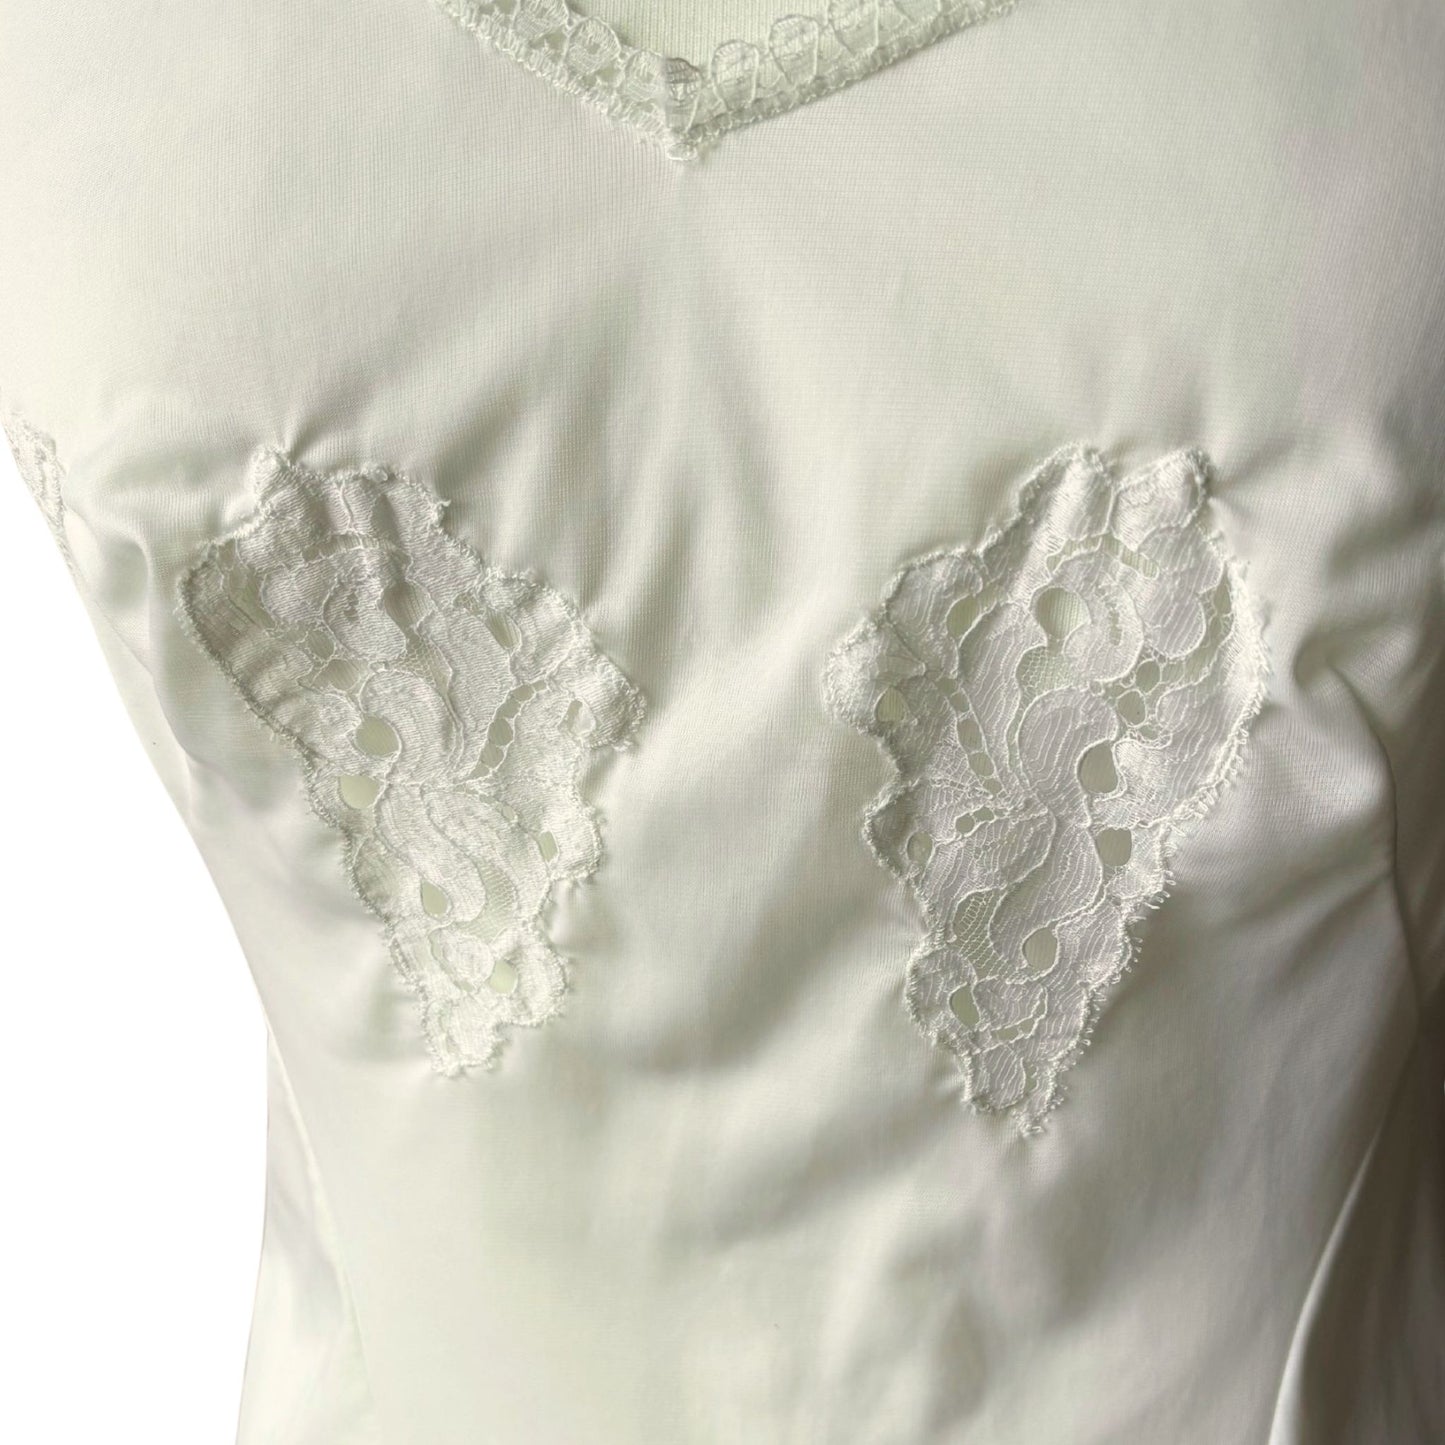 Creamy White Lace Decorated V Neck Vintage Mini Slip Dress.  Approx U.K. size 8-10